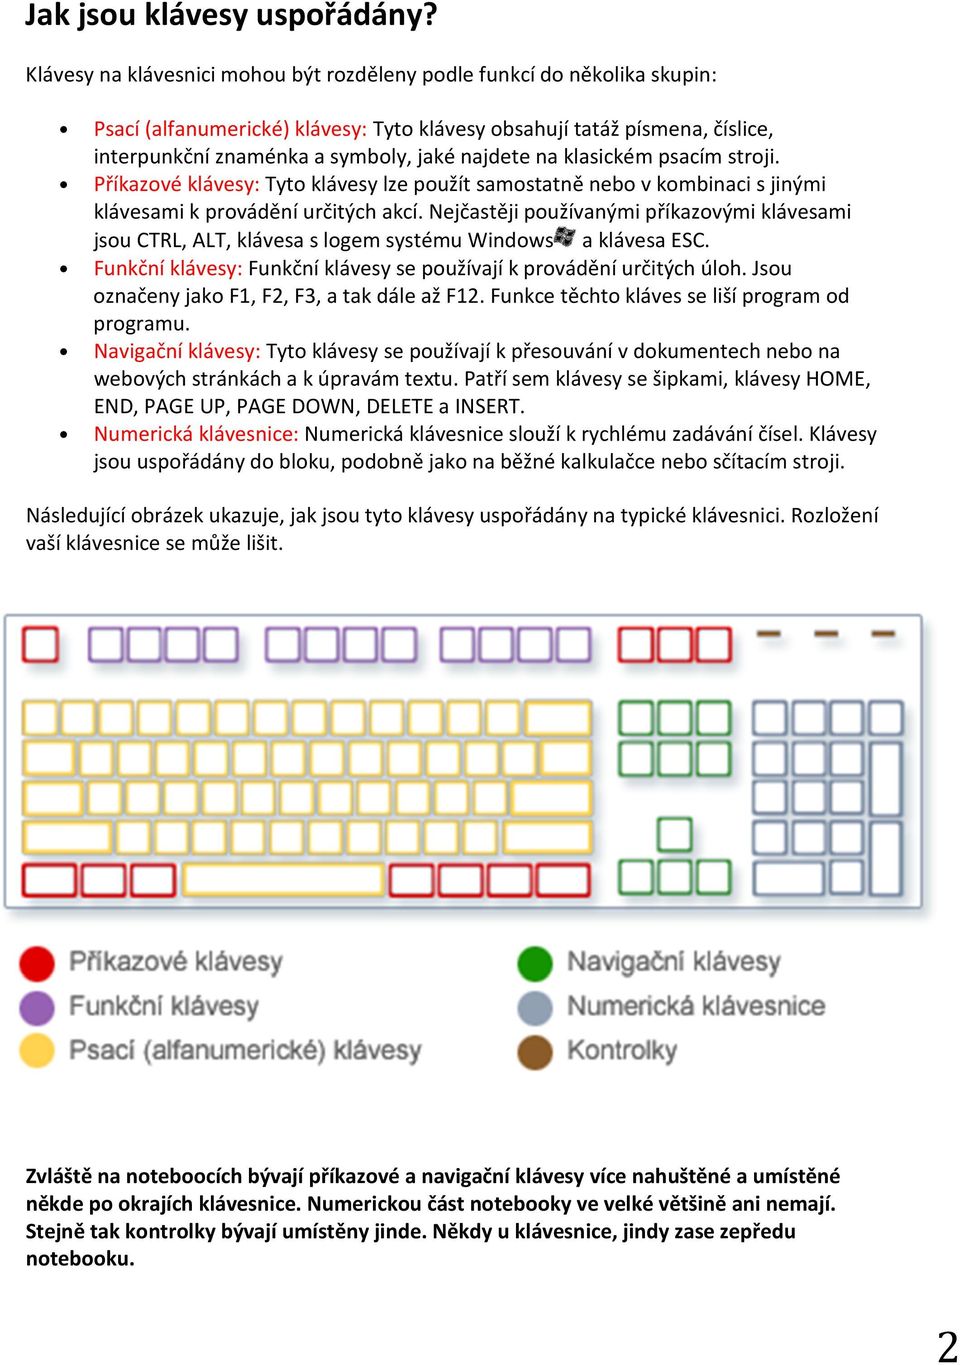 na klasickém psacím stroji. Příkazové klávesy: Tyto klávesy lze použít samostatně nebo v kombinaci s jinými klávesami k provádění určitých akcí.